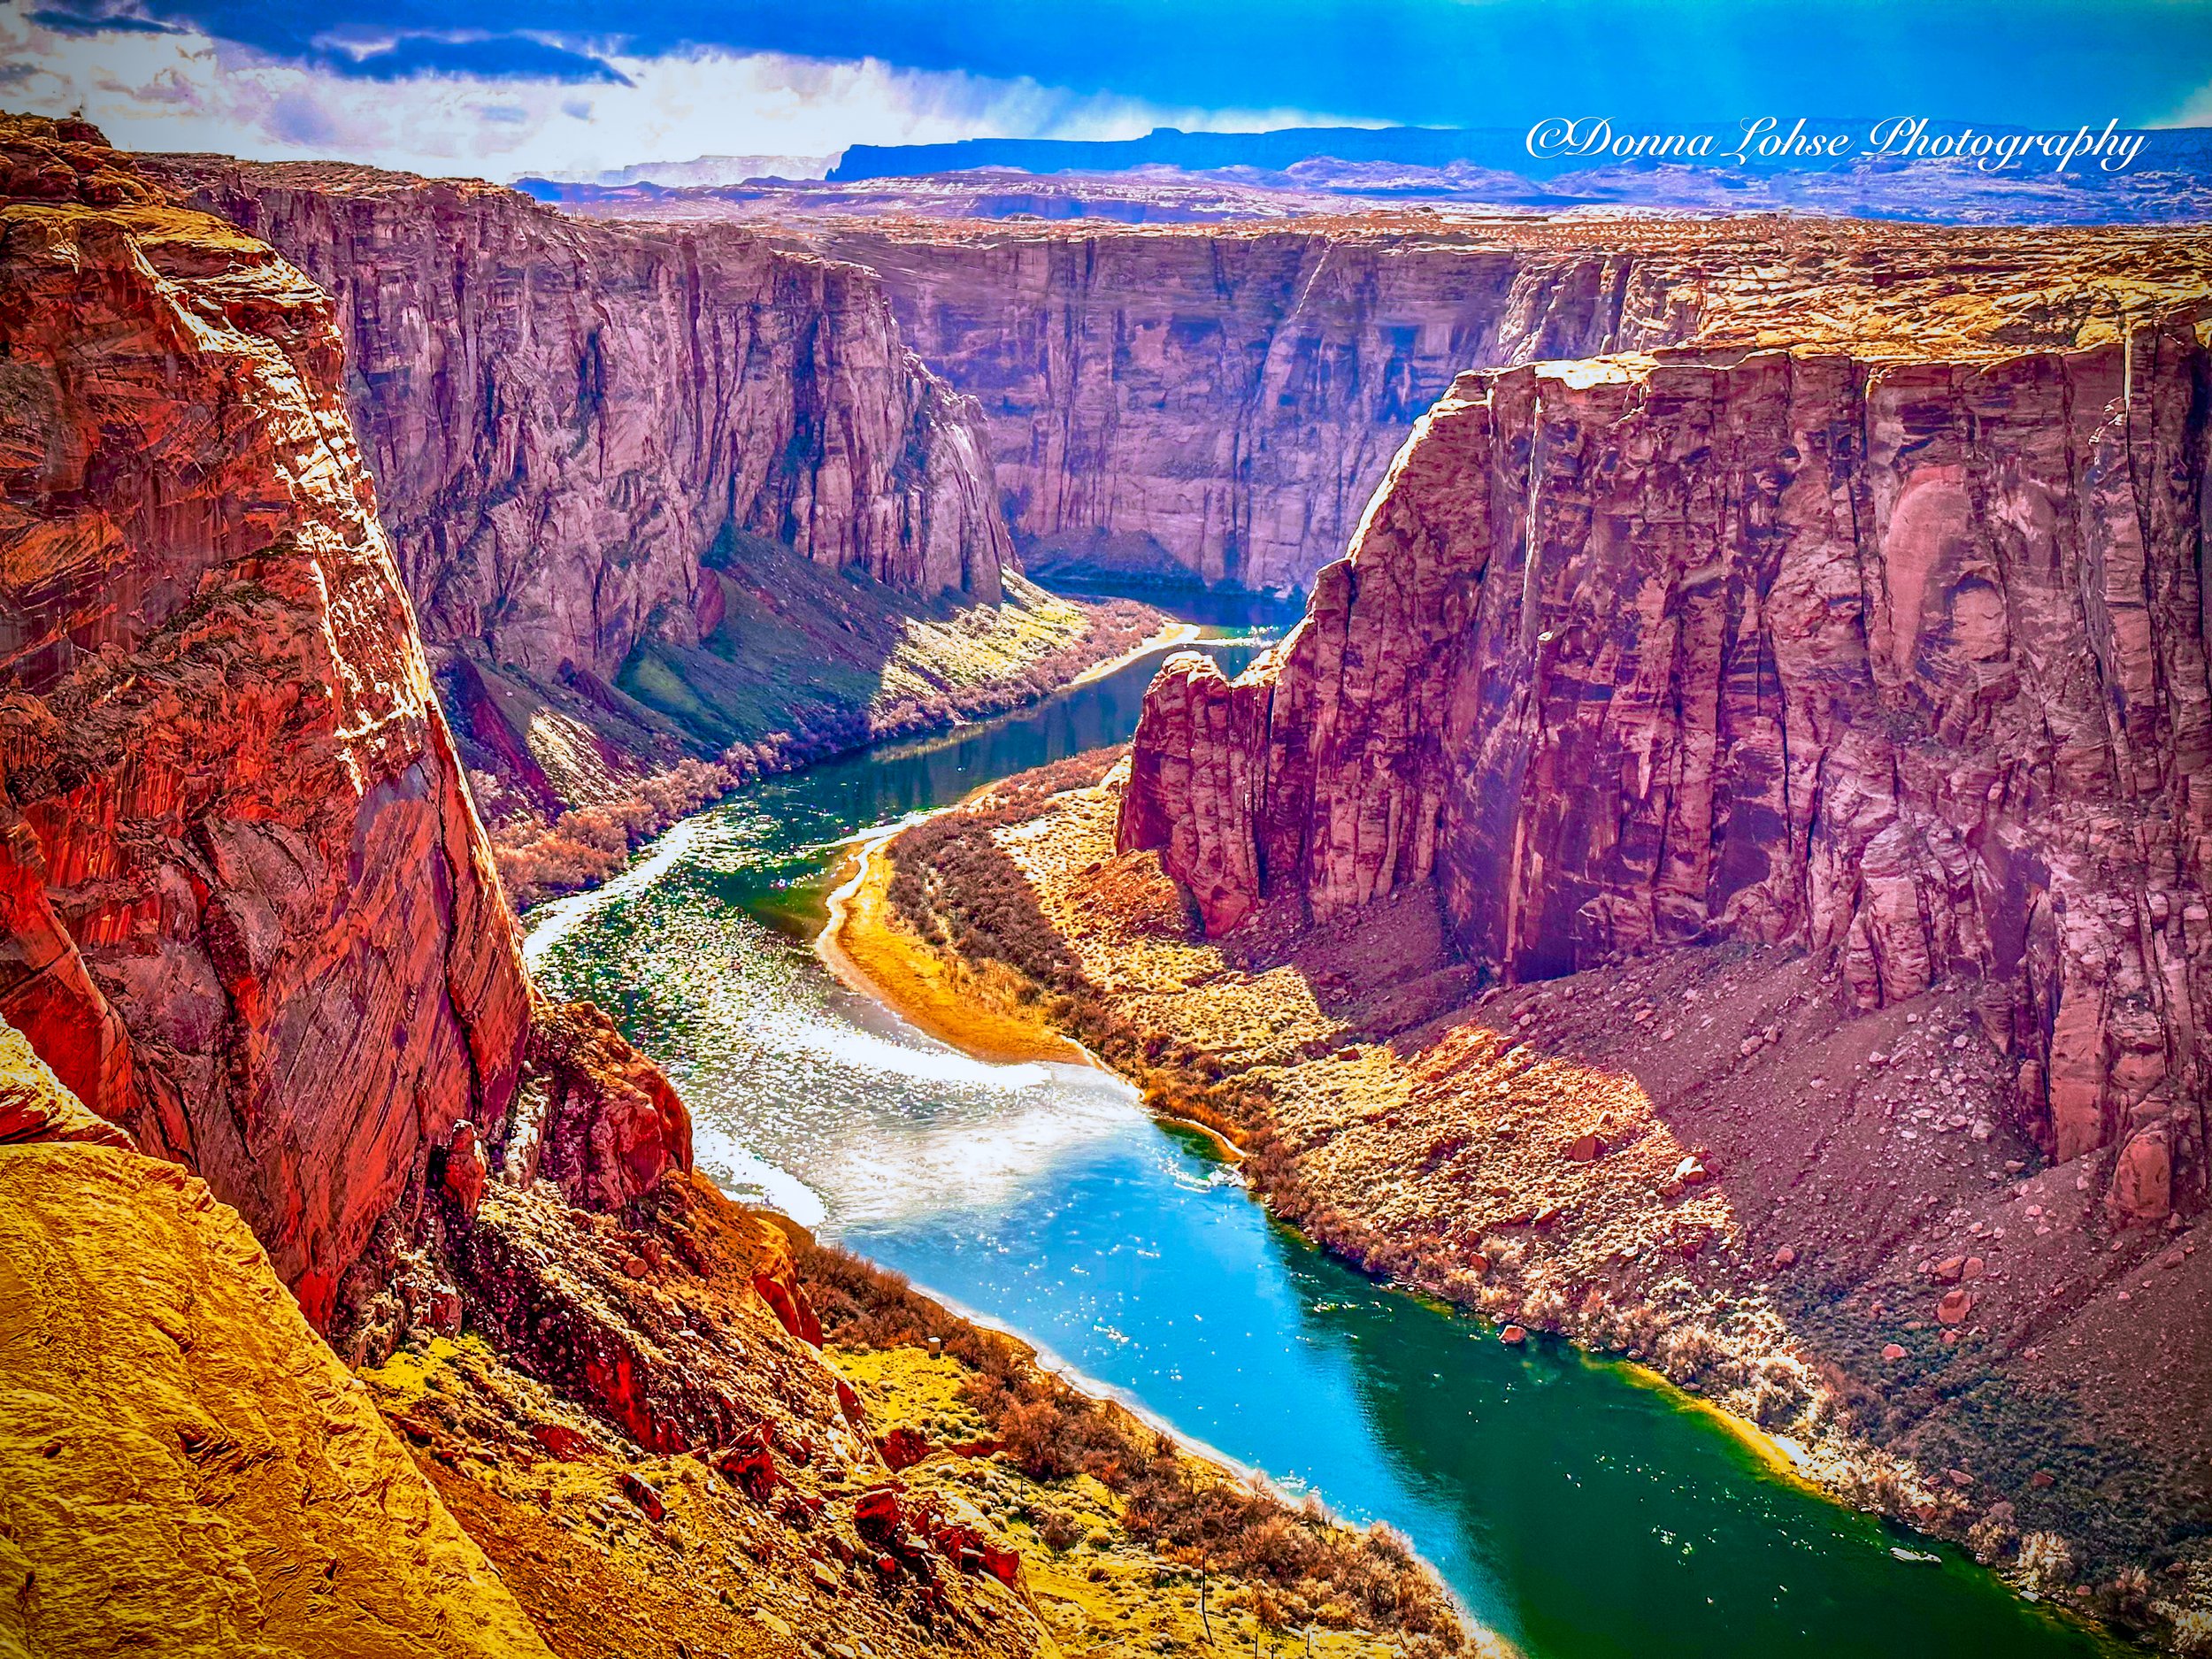 Canyon Majesty: A Landscape Like No Other